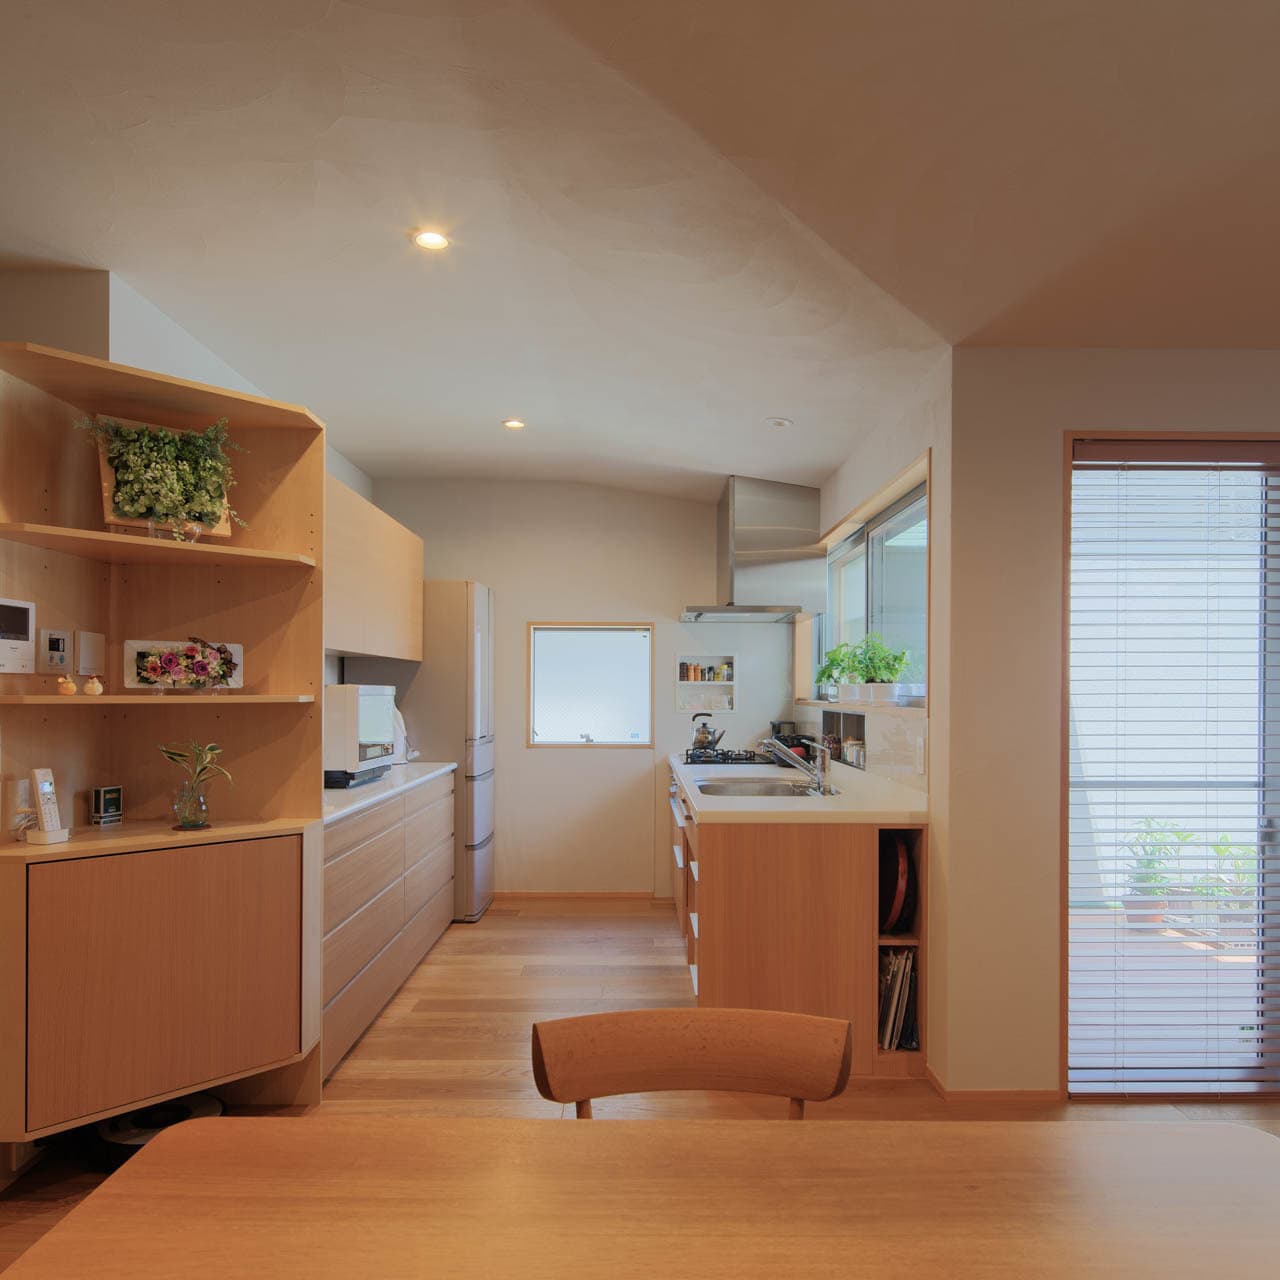 大阪の建築家・中平勝が設計した阿倍野に建つシニア対応の木造住宅です